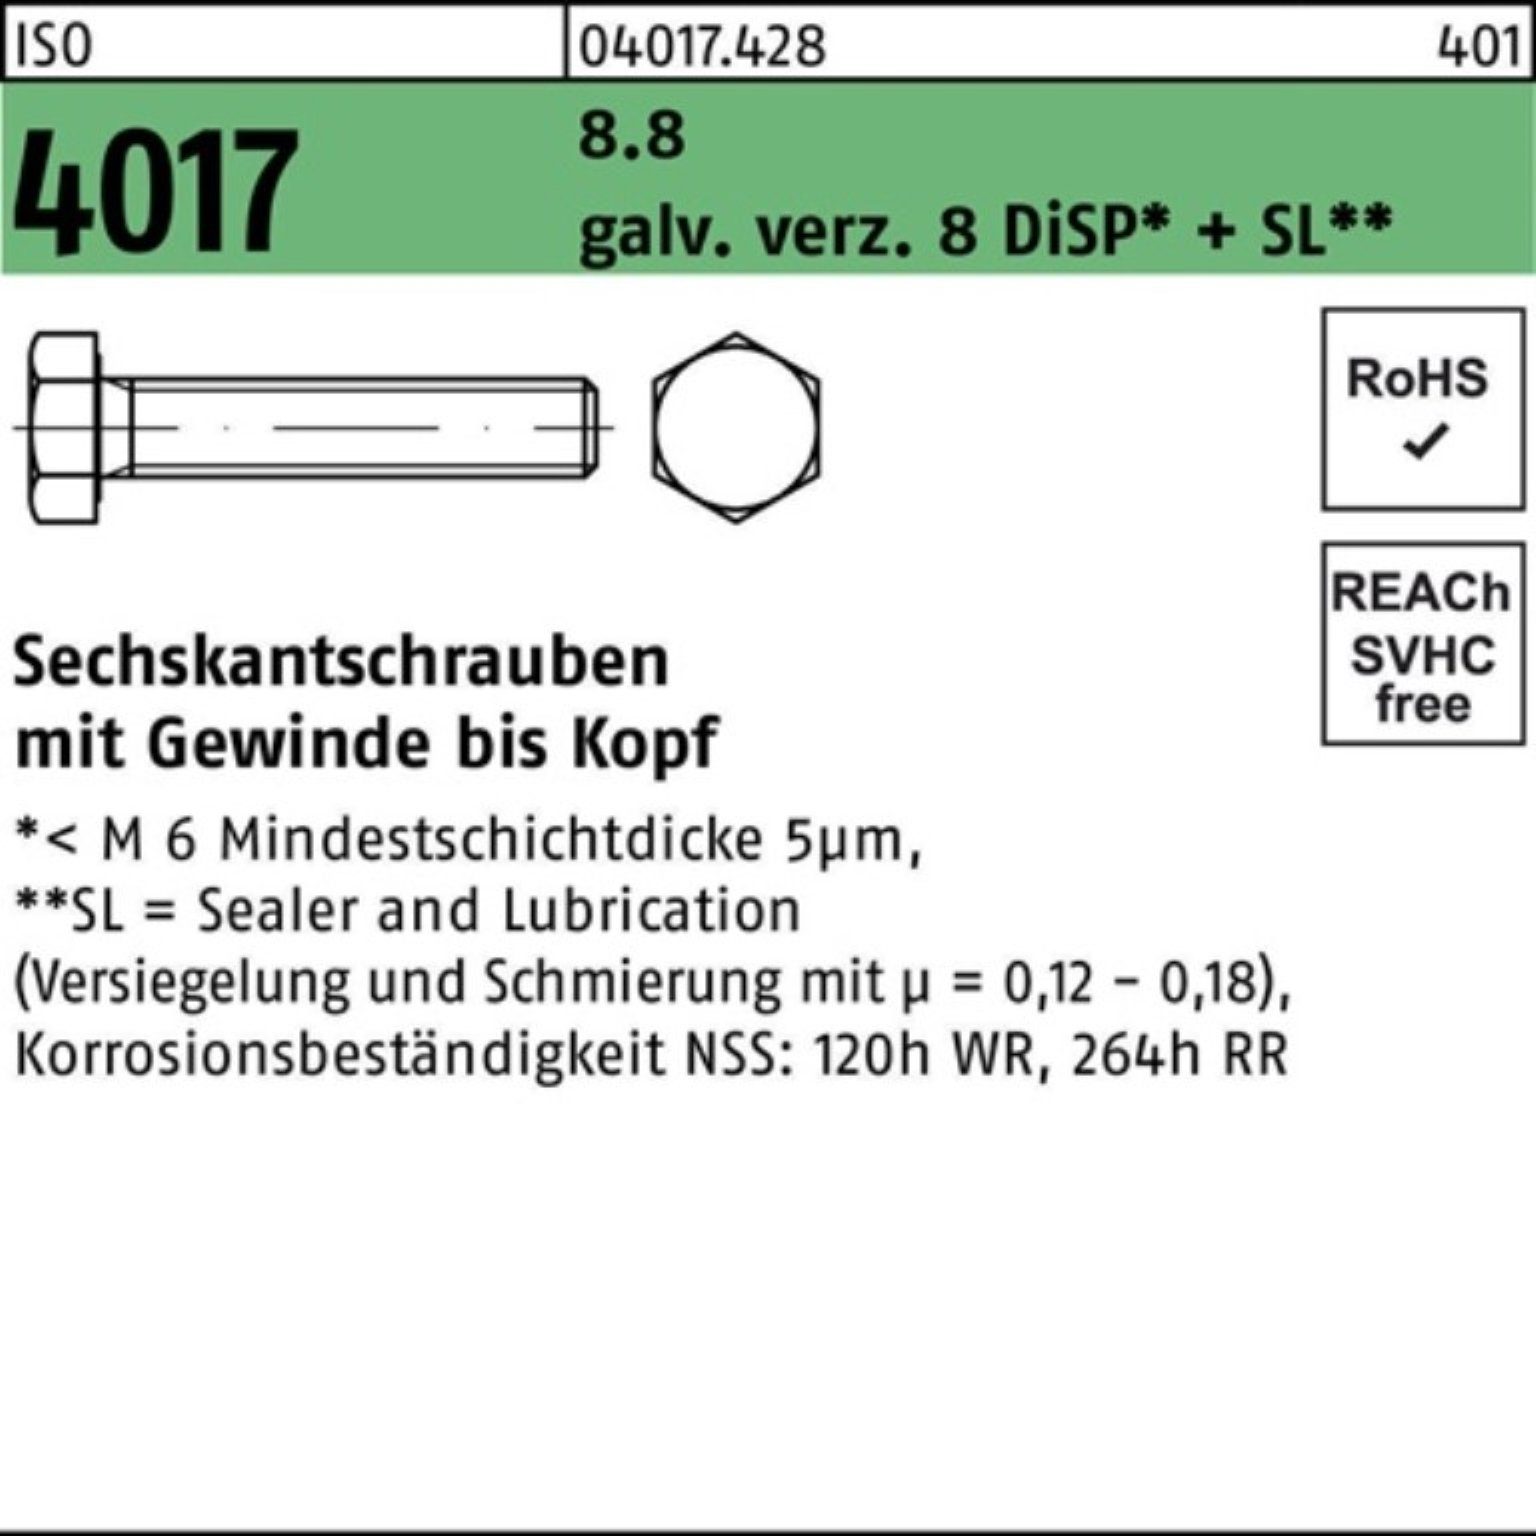 200er Sechskantschraube 4017 ISO Bufab Pack M8x 12 8 Sechskantschraube VG 8.8 DiSP+ galv.verz.